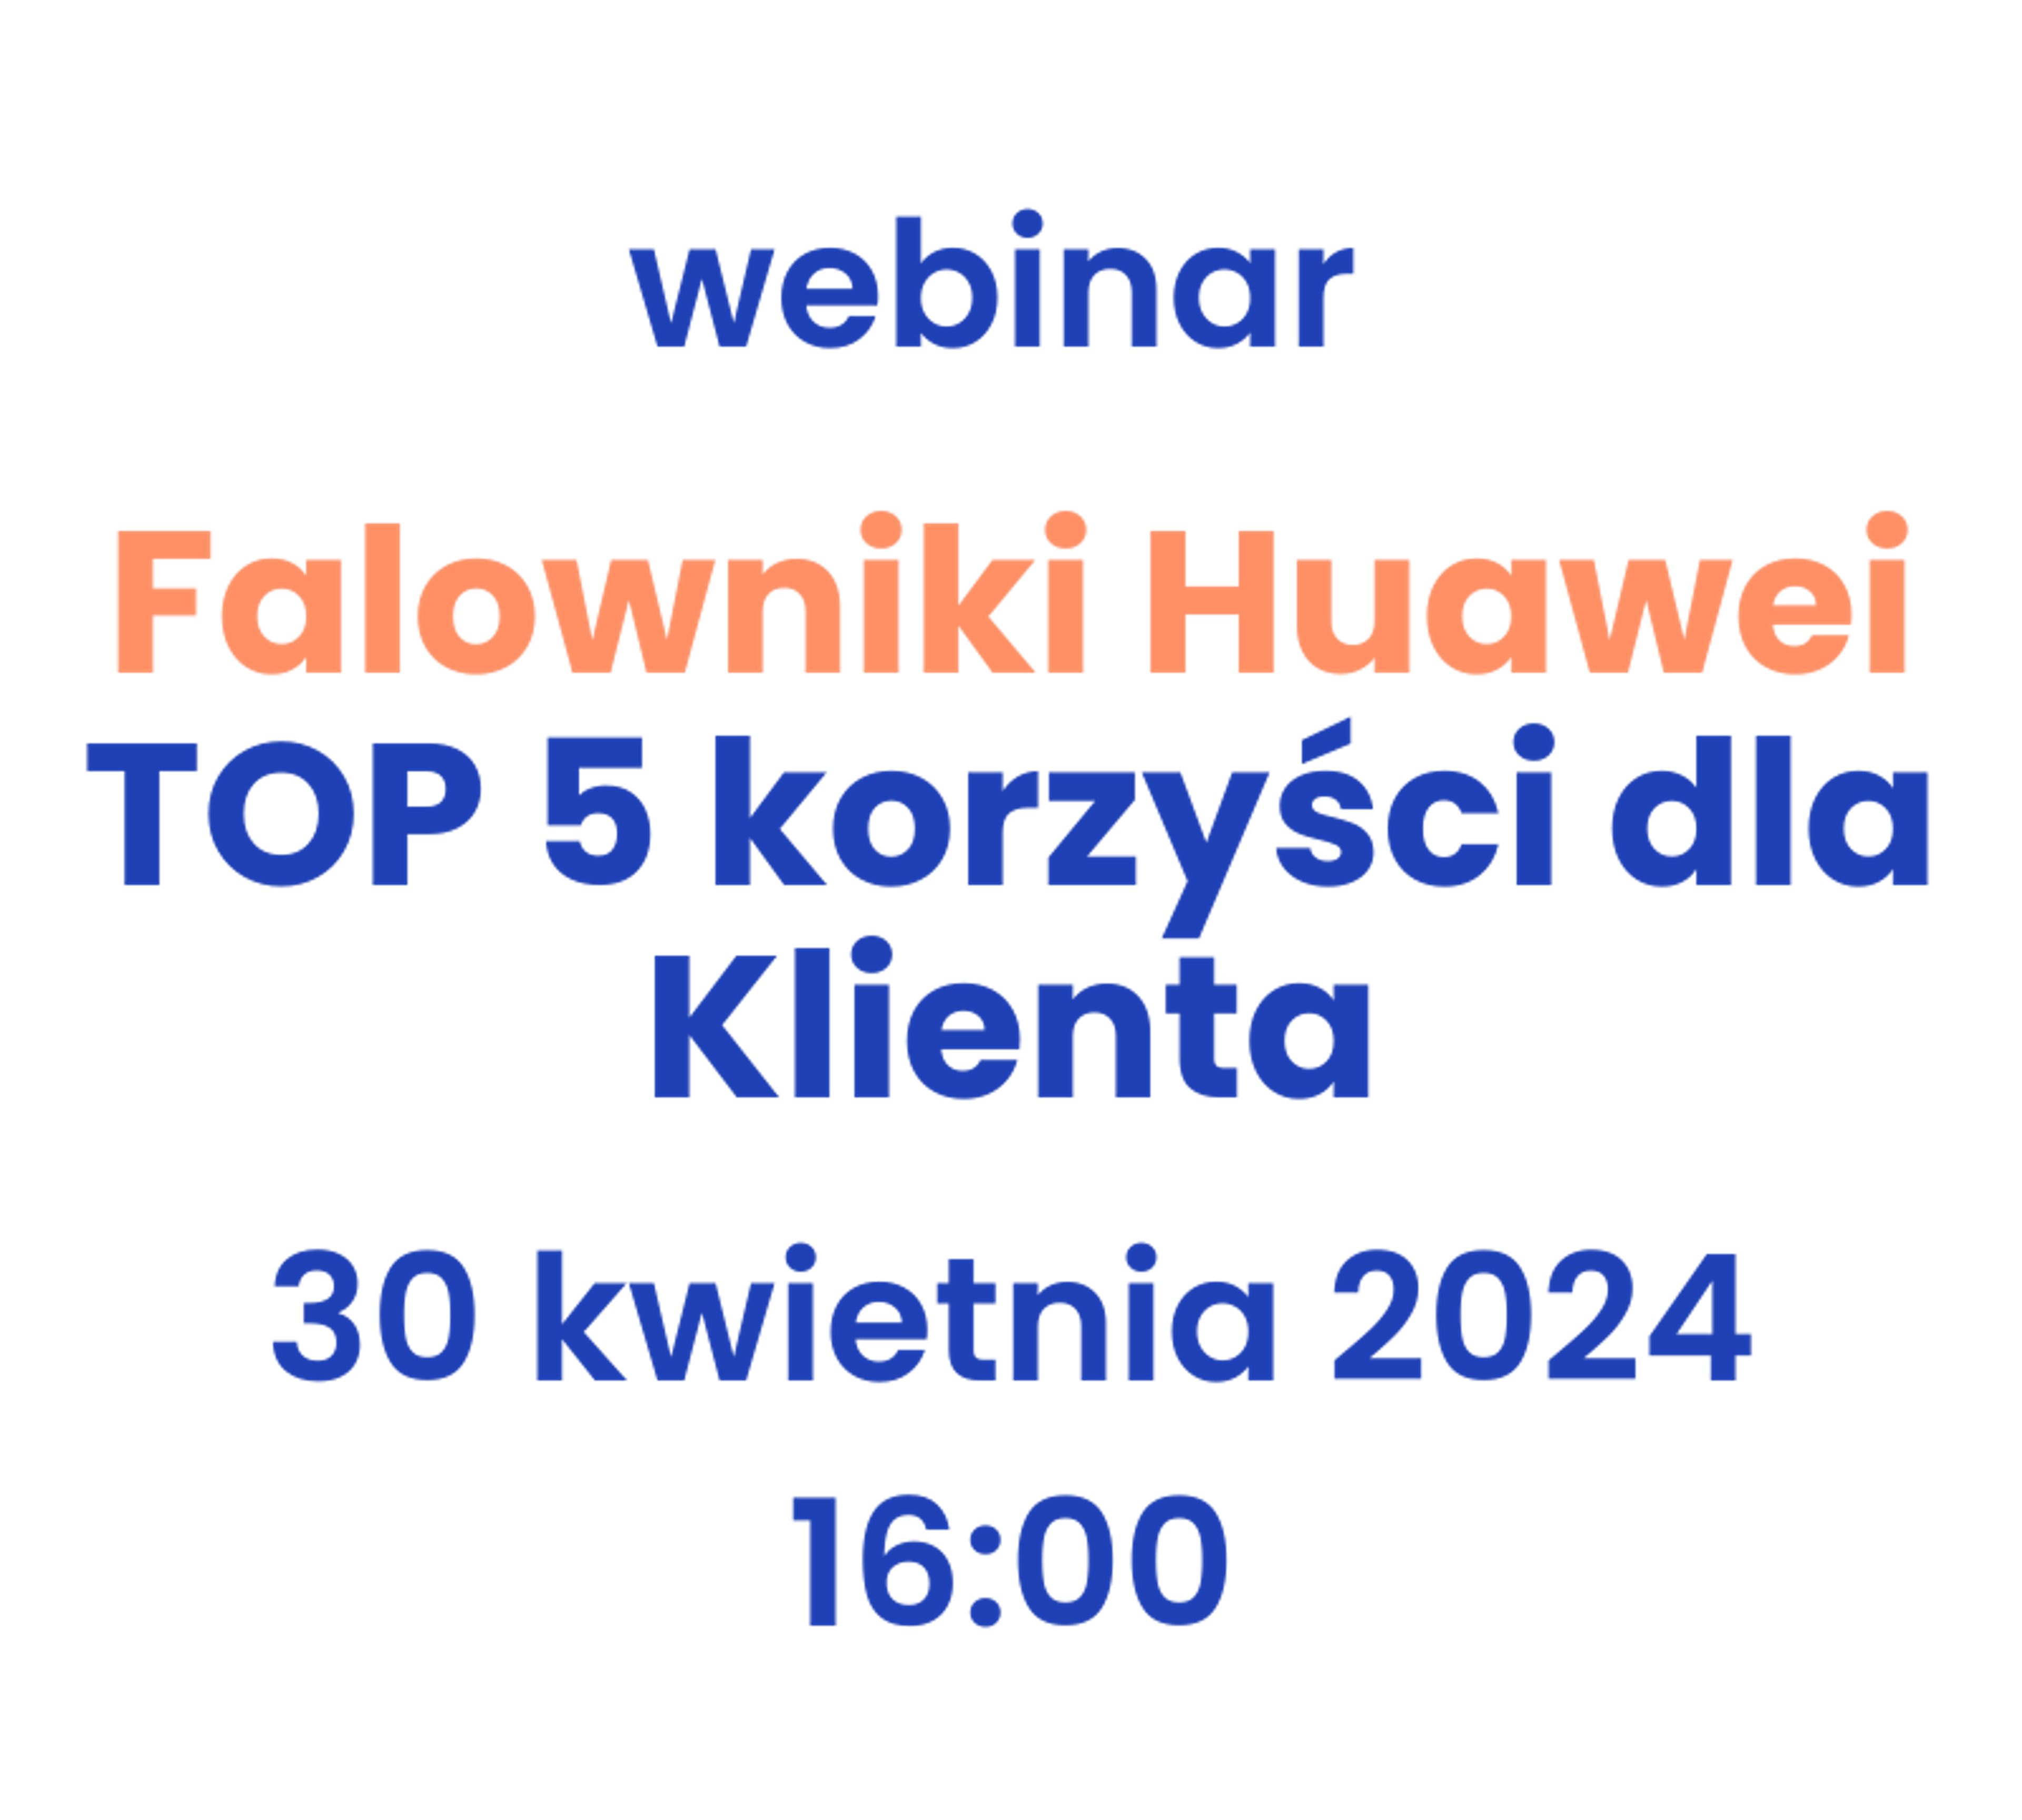 webinar Falowniki Huawei - TOP 5 korzyści dla Klienta